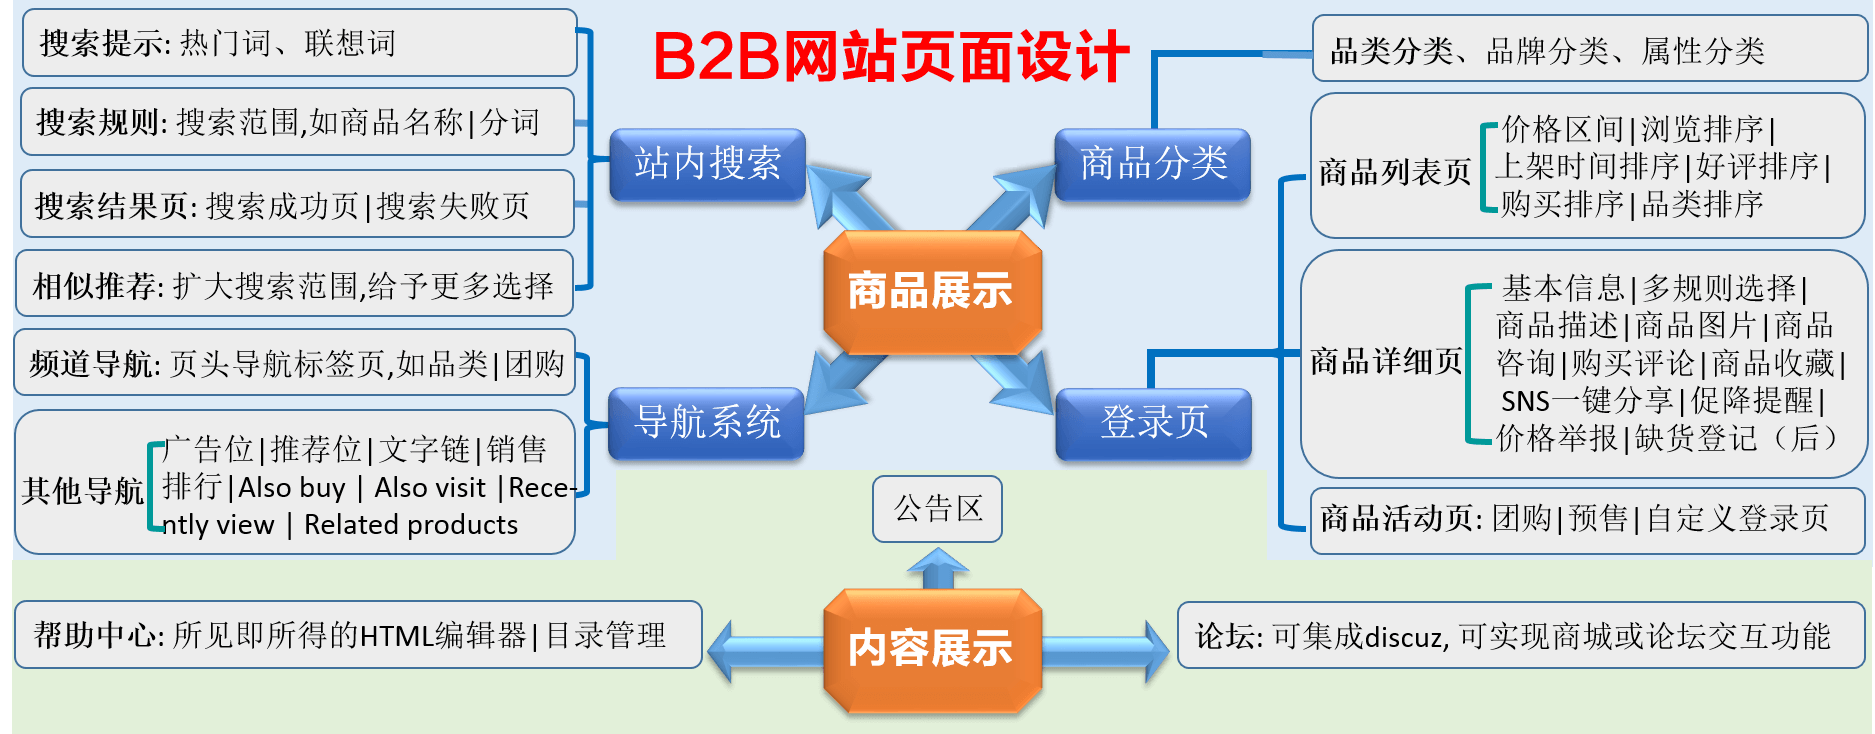 B2B网站营销流程图